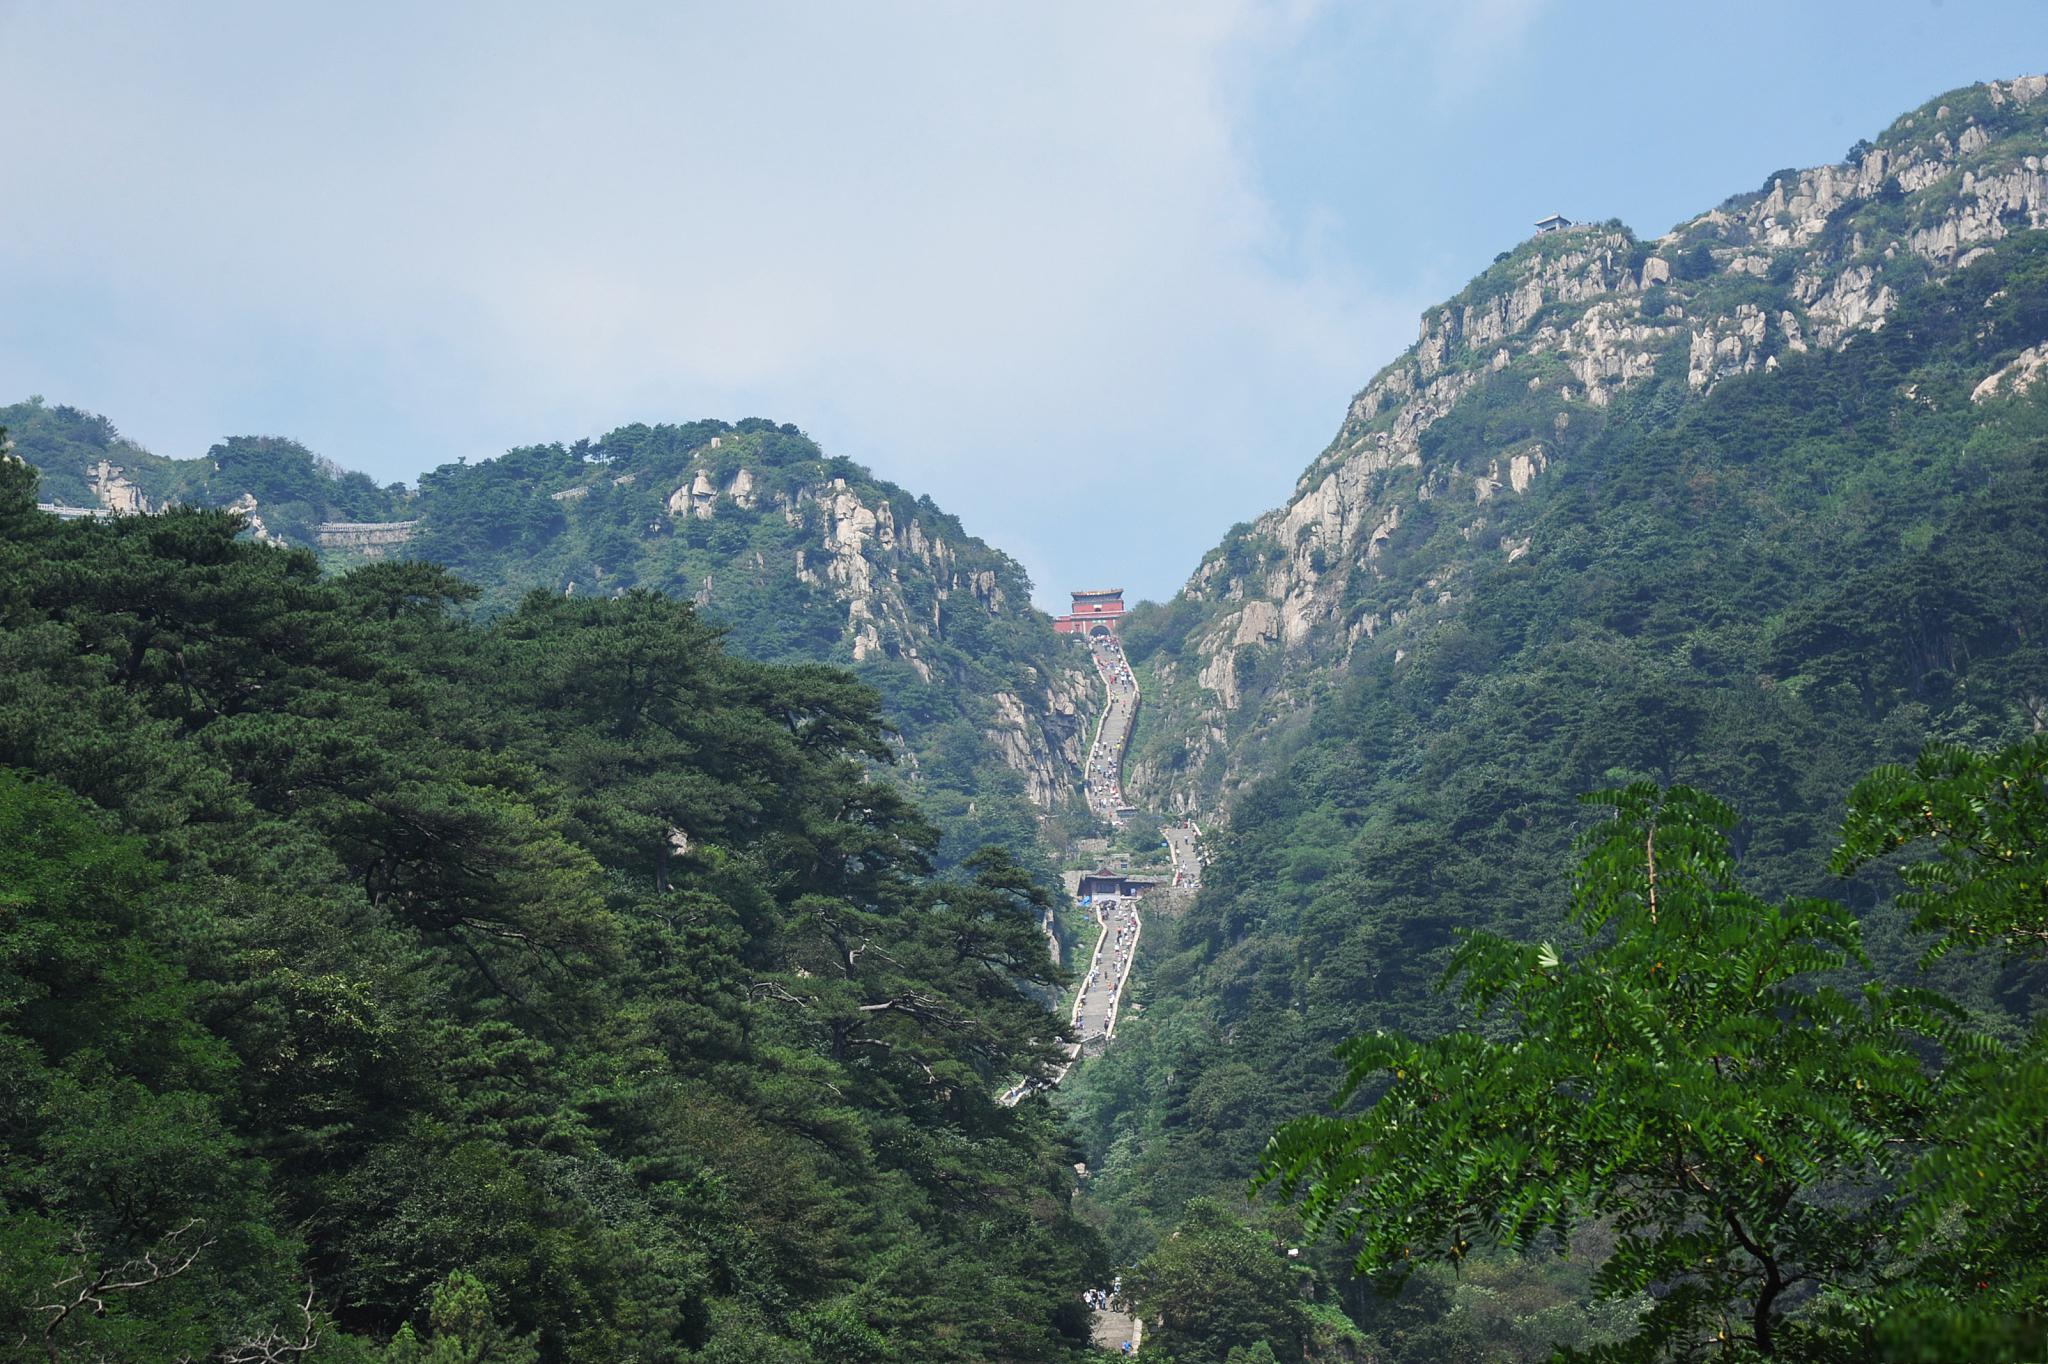 泰山,中国的自然风光胜地 泰山,是中国著名的五岳之一,被誉为五岳之